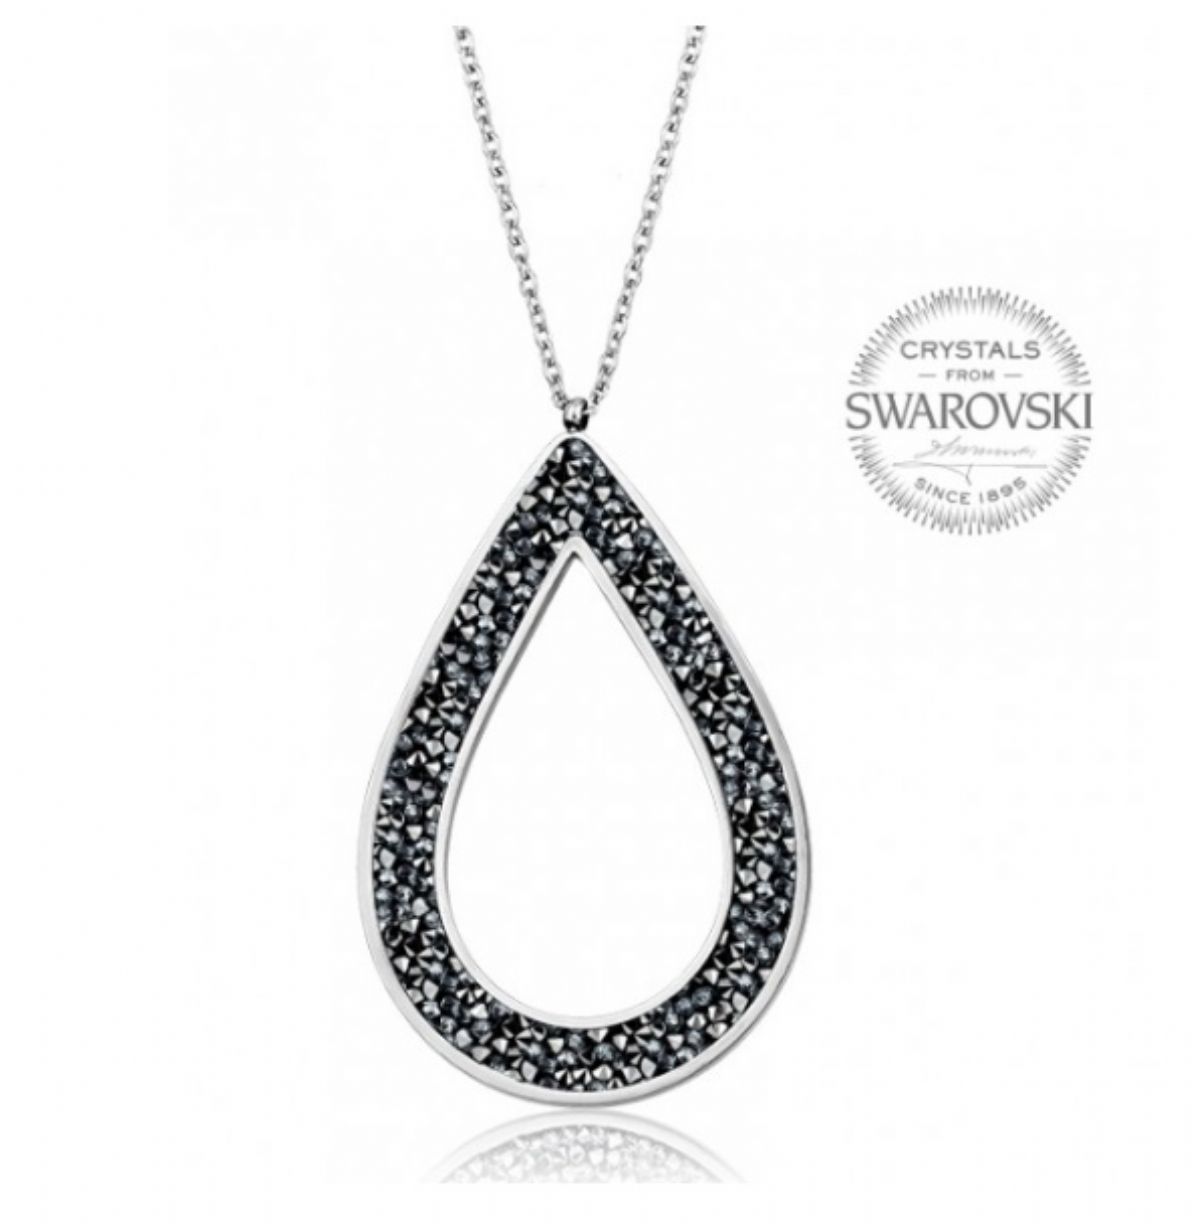 Ocelový náhrdelník SWAROVSKI krystaly - Rocks pear grey 1/1